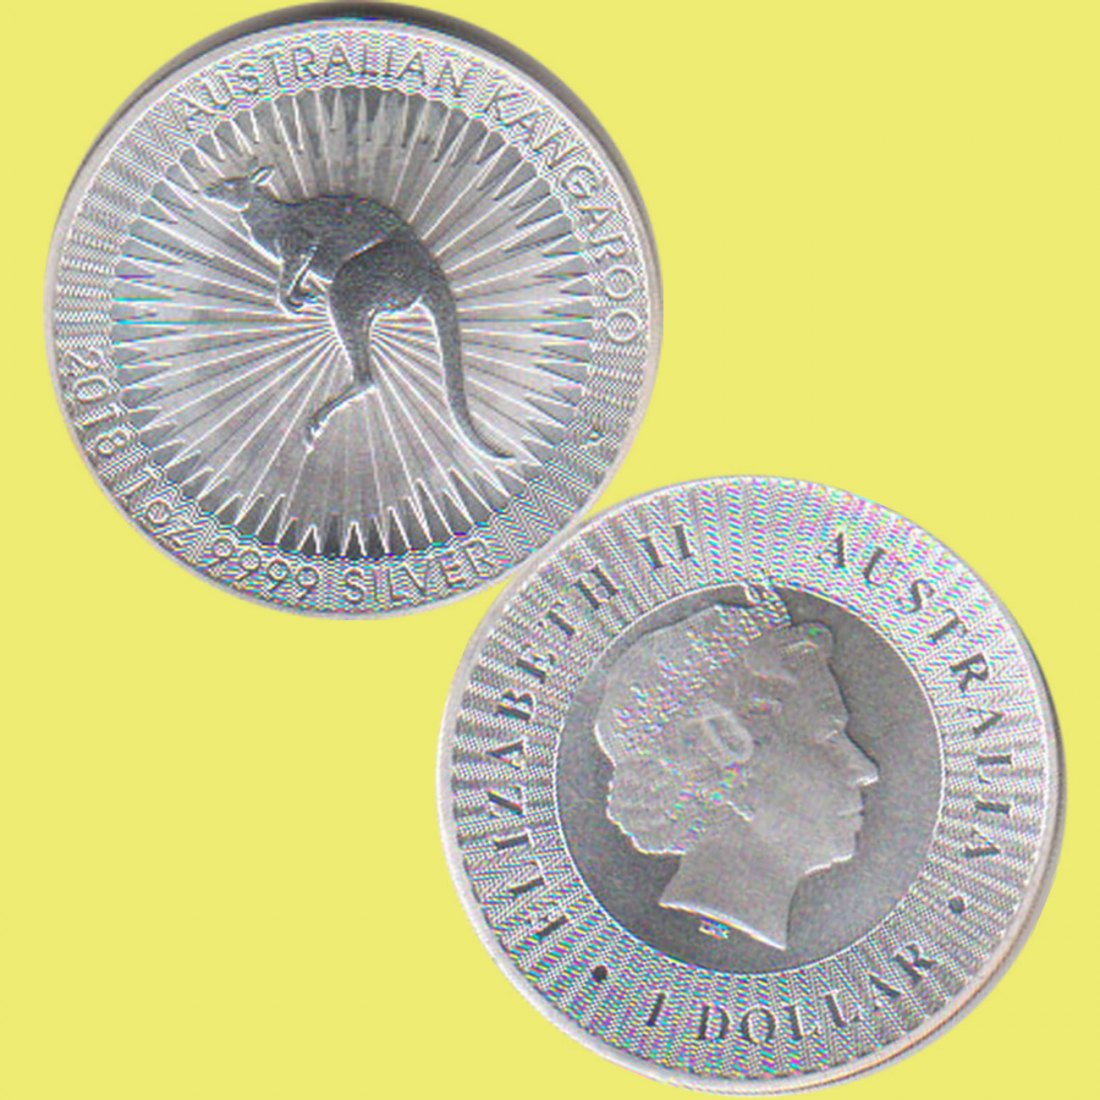  Australien 1 Dollar Silbermünze *Känguru* 2016 1oz Silber   